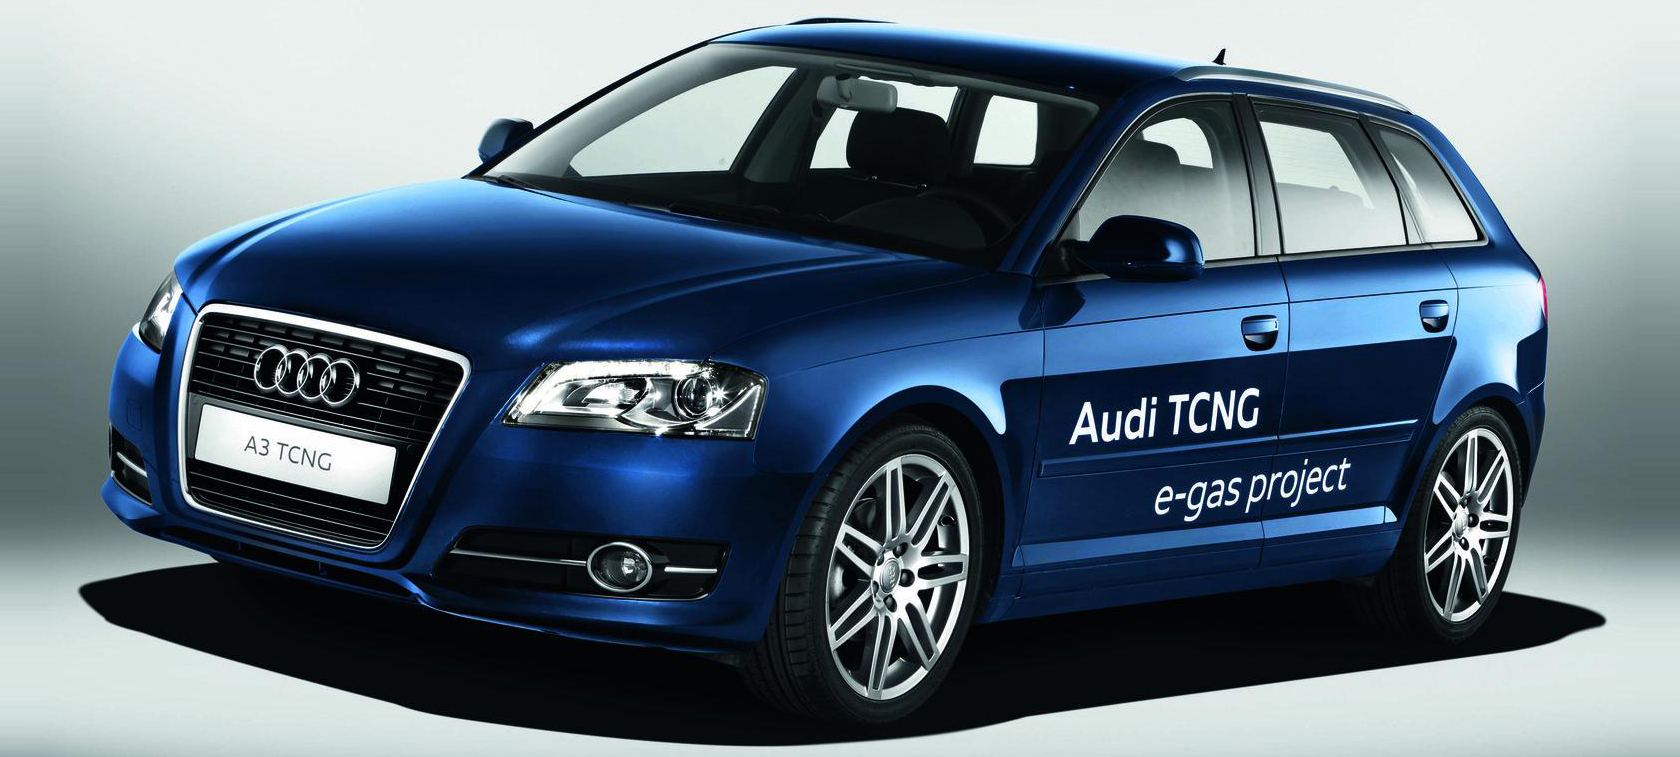 Audi A3 TCNG e-gas - kto późno przychodzi...